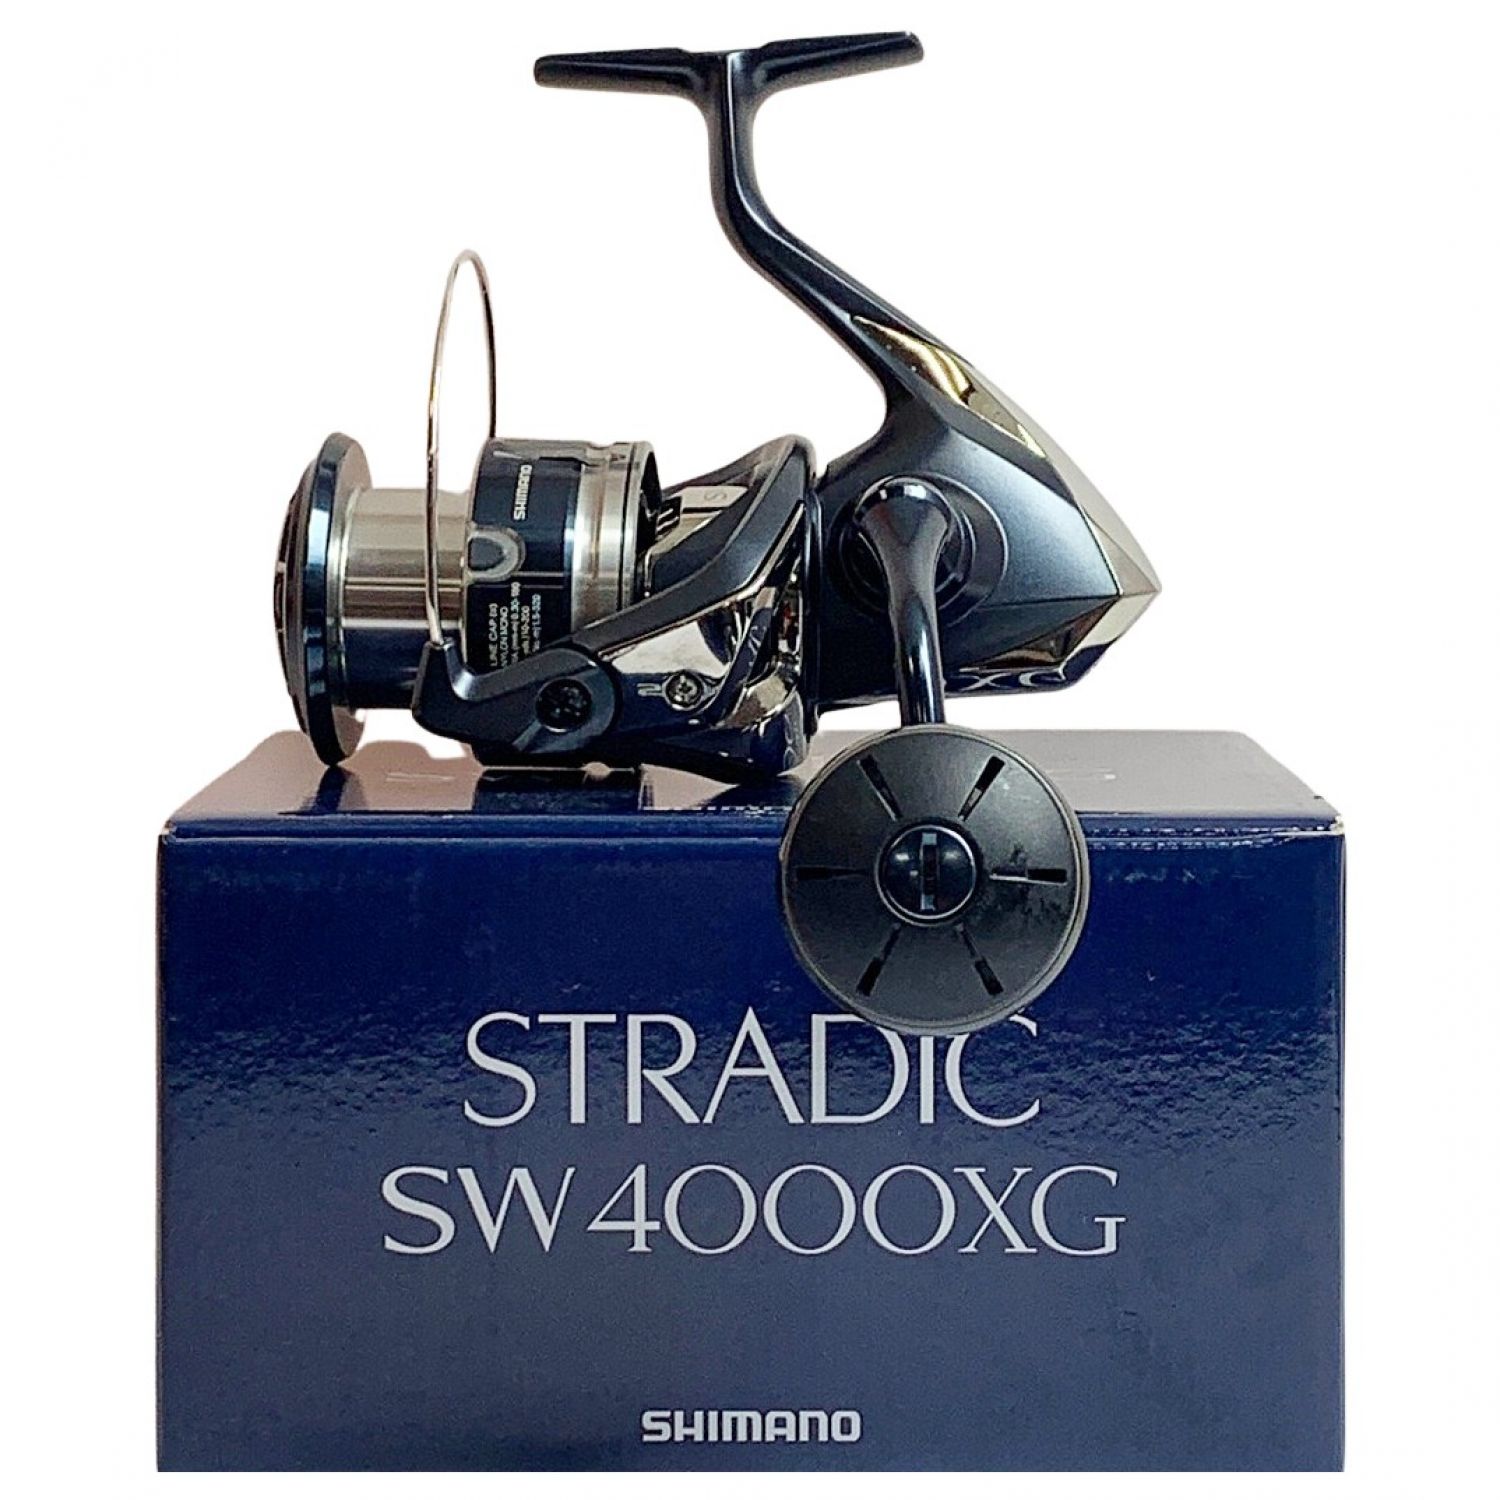 ストラディックSW4000xg シマノ スピニングリール SHIMANO - リール